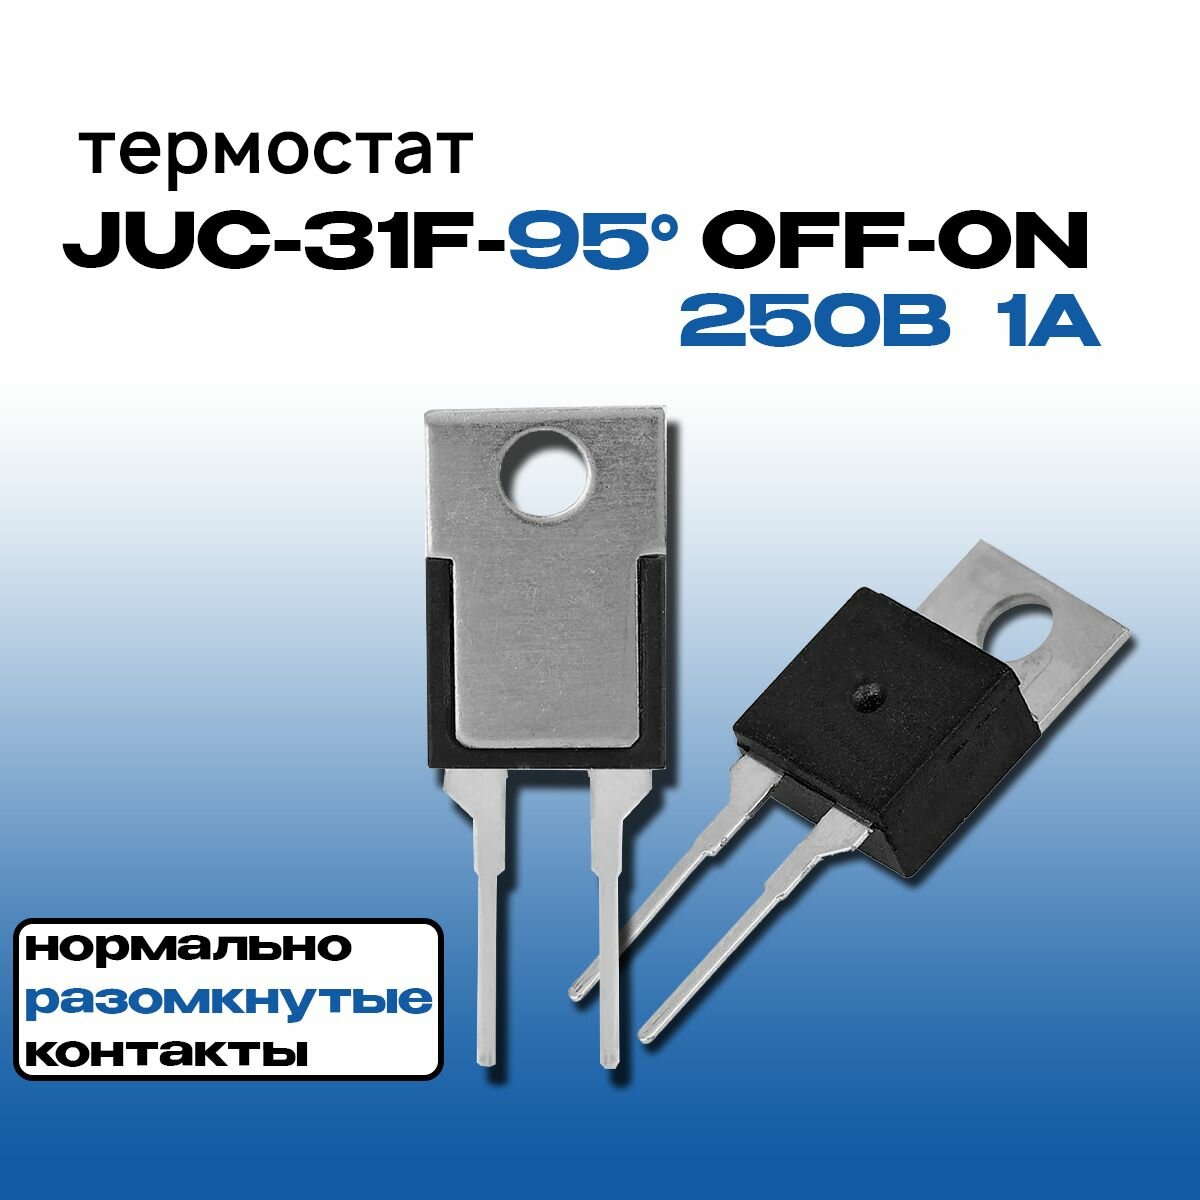 Термостат (термореле) JUC-31F-95 OFF-ON TO-220 250В 1А